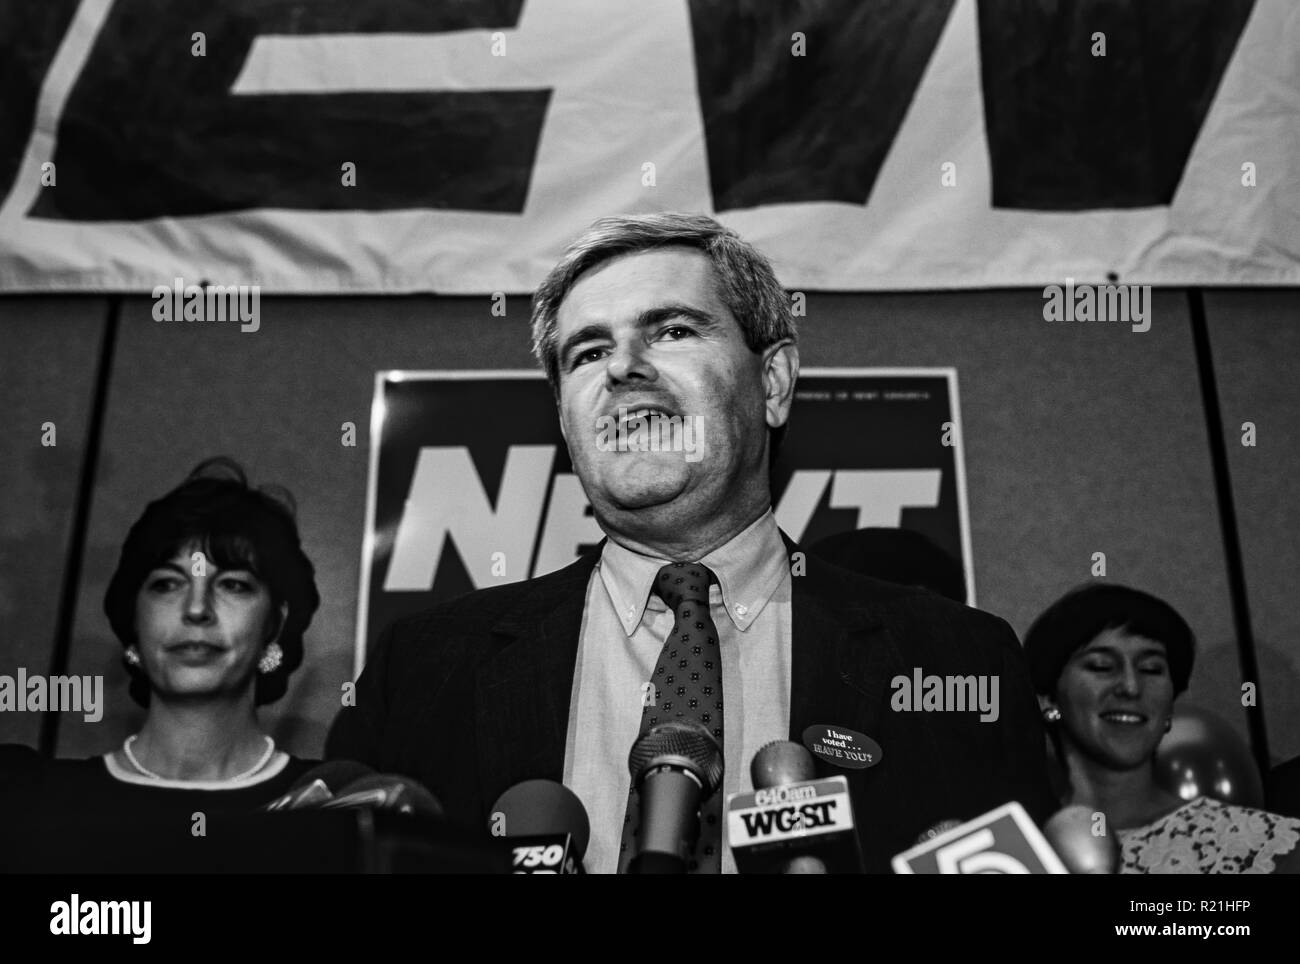 Newt Gingrich parle de son parti de victoire est un homme politique et auteur américain qui a servi comme 50ème Président de la Chambre des représentants des États-Unis de 1995 à 1999. Membre du Parti républicain, il a été le représentant des États-Unis pour la 6ème circonscription du Congrès de Géorgie desservant le nord d'Atlanta et les régions voisines de 1979 jusqu'à sa démission en 1999. En 2012, Gingrich s’est présenté sans succès à la nomination républicaine à la présidence des États-Unis. Banque D'Images